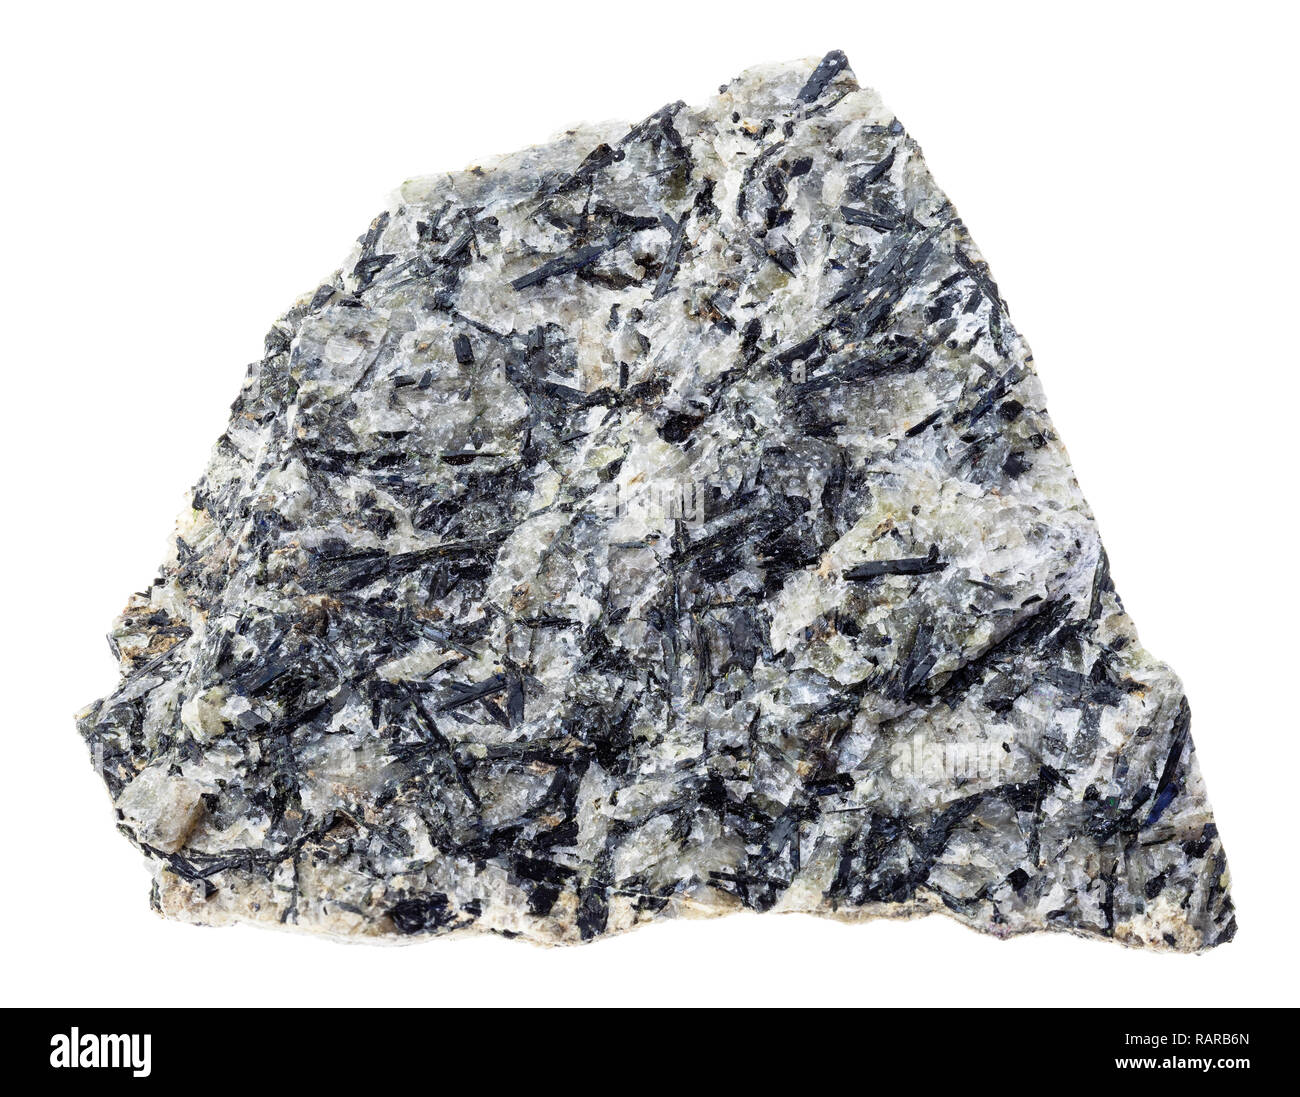 Makrofotografie von natürlichen Mineral aus geologische Sammlung - Grobe lujaurite (lujavrite, nephelinsyenit) Stein auf weißem Hintergrund Stockfoto